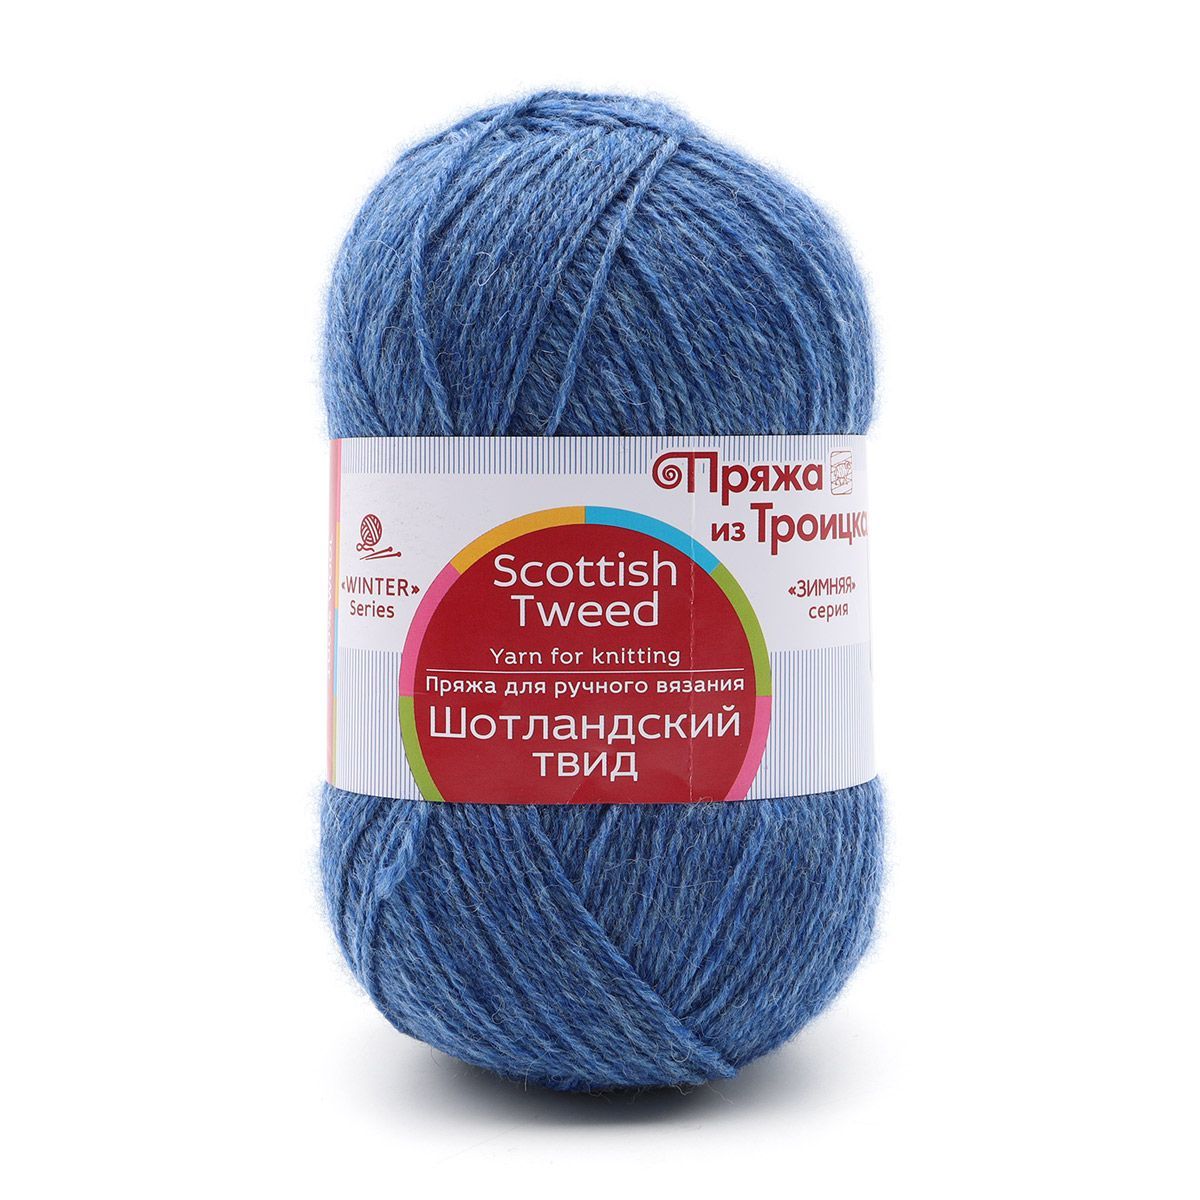 Пряжа для вязания из Троицка Шотландский твид 100г 360м (373 джинсовый меланж) 10 мотков